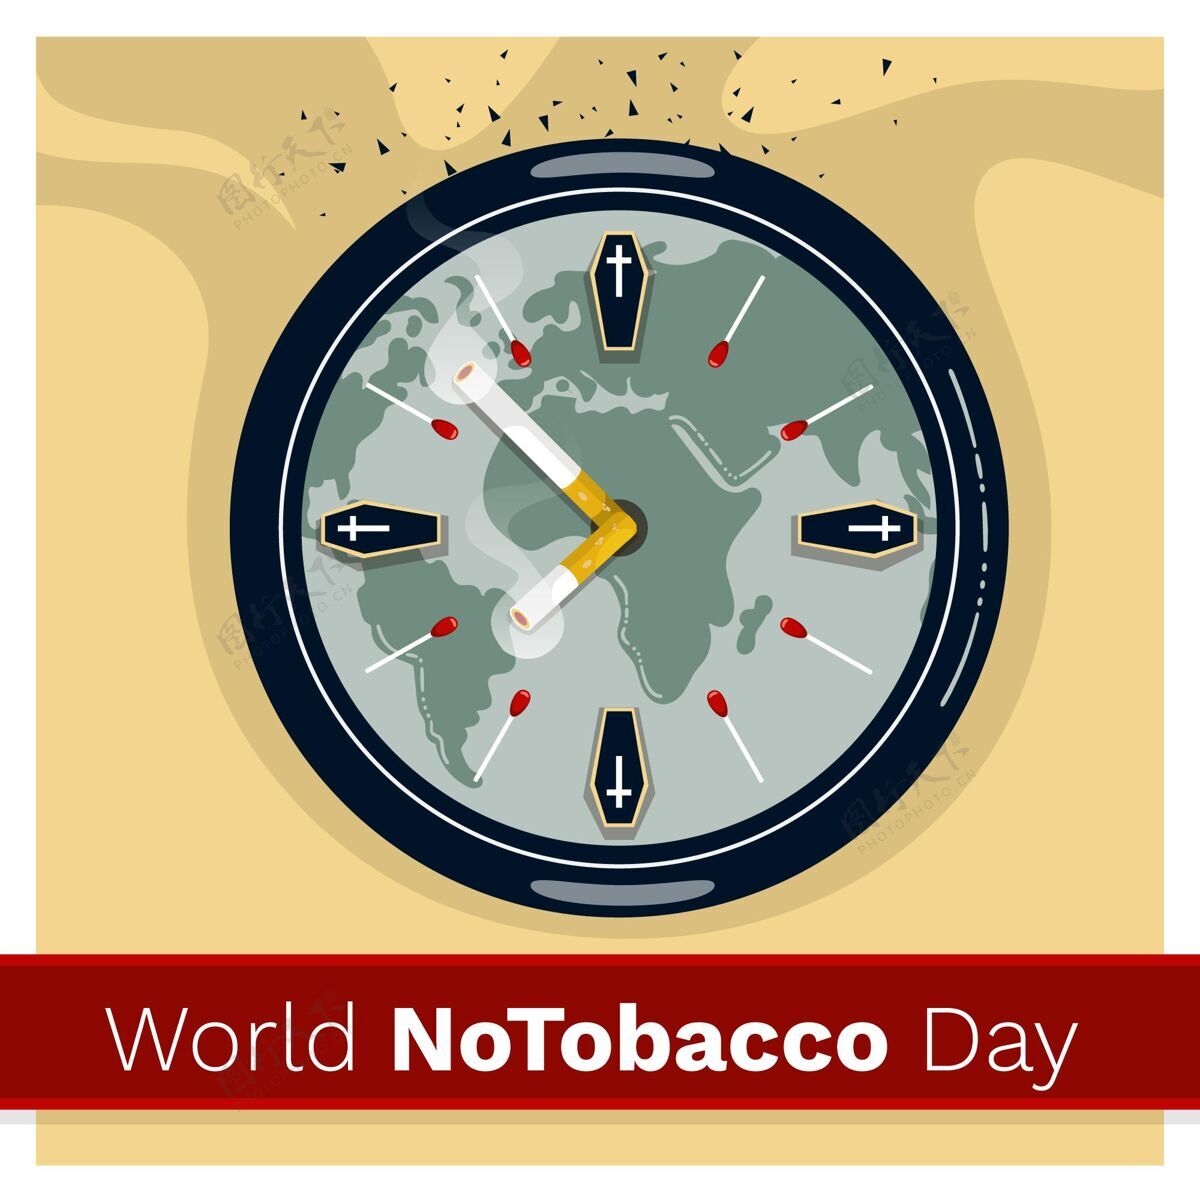 习惯手绘世界无烟日插画健康5月31日国际